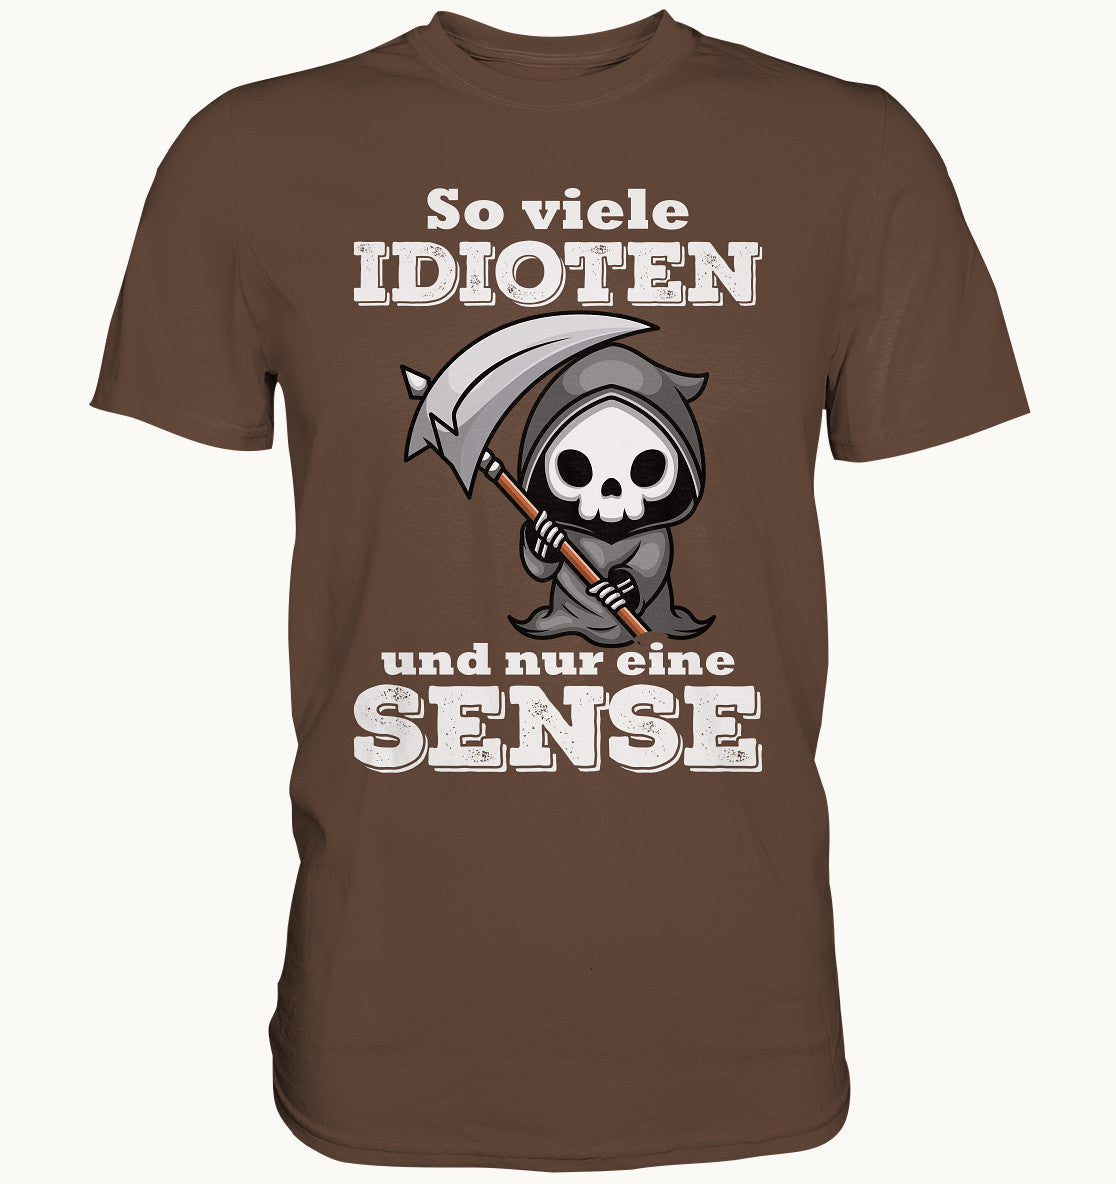 So viele Idioten und nur eine Sense - Premium Shirt